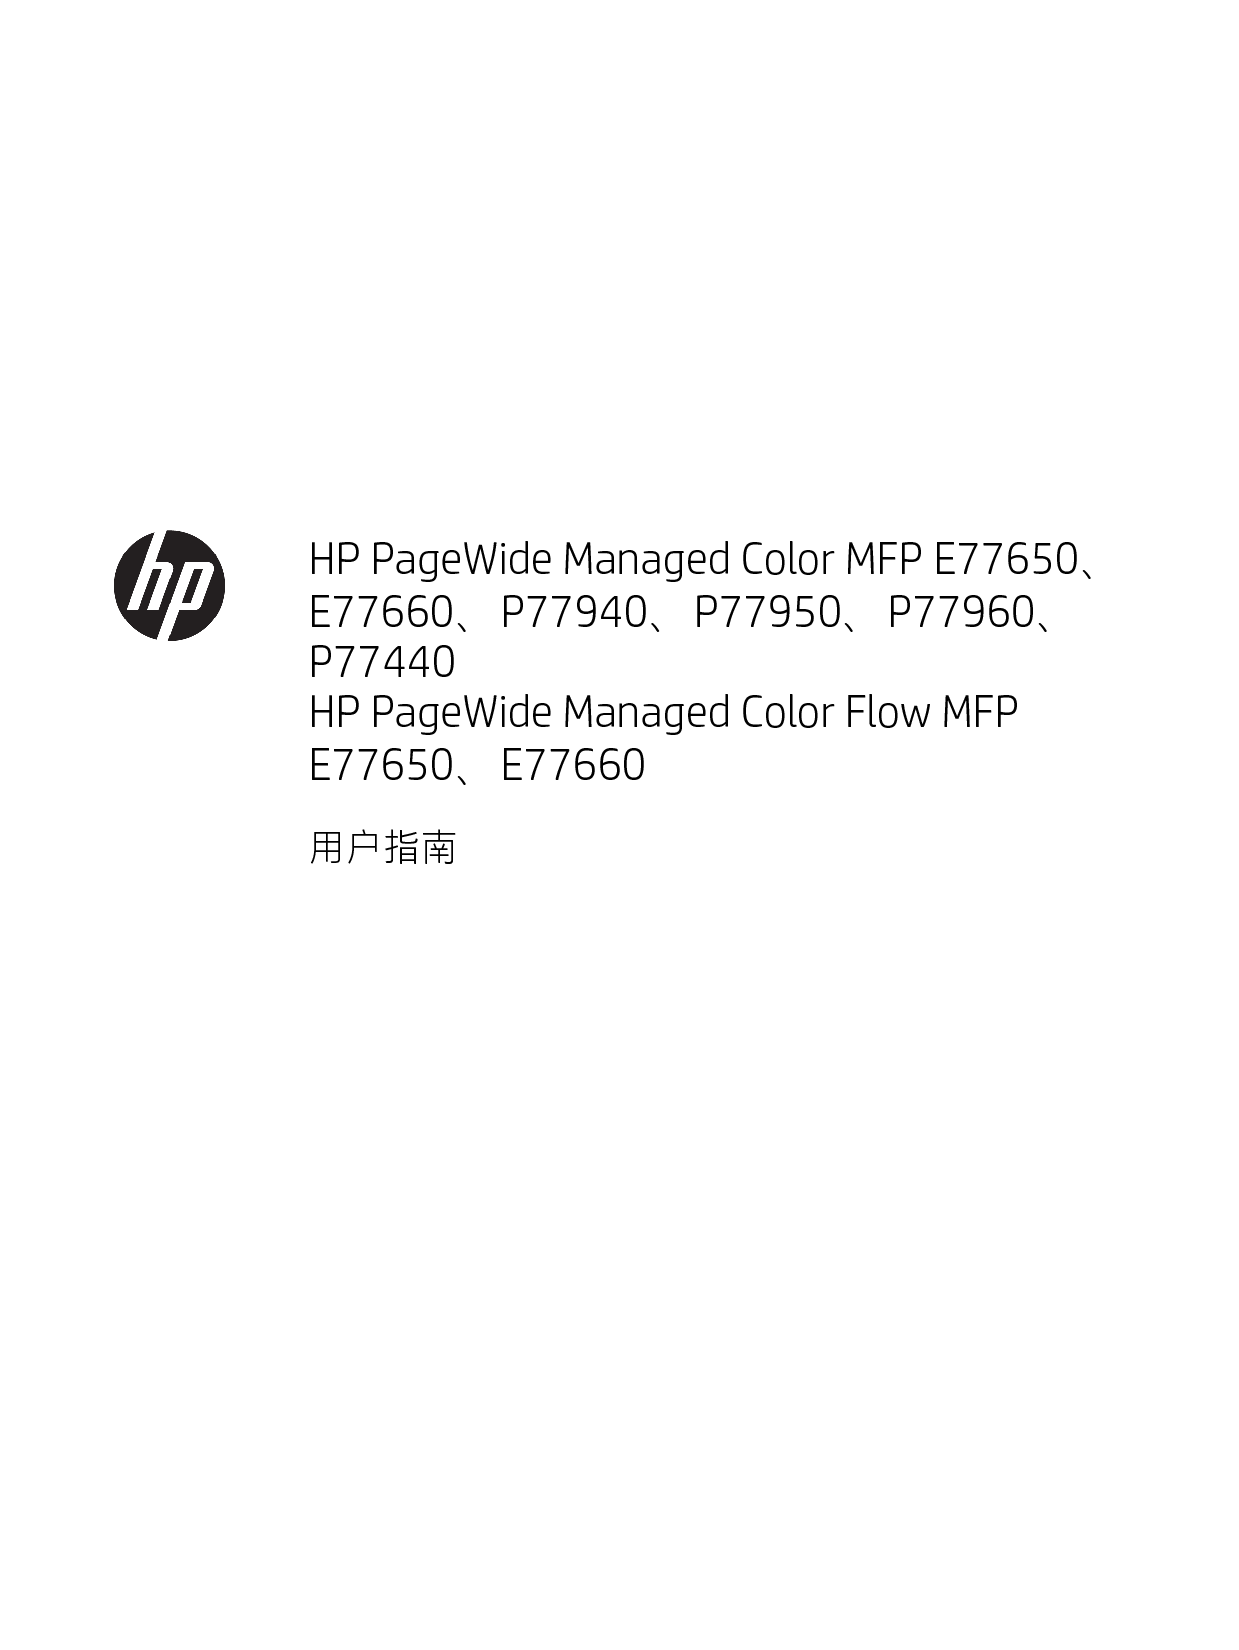 惠普 HP PageWide Managed Color Flow MFP E77650 用户指南 封面